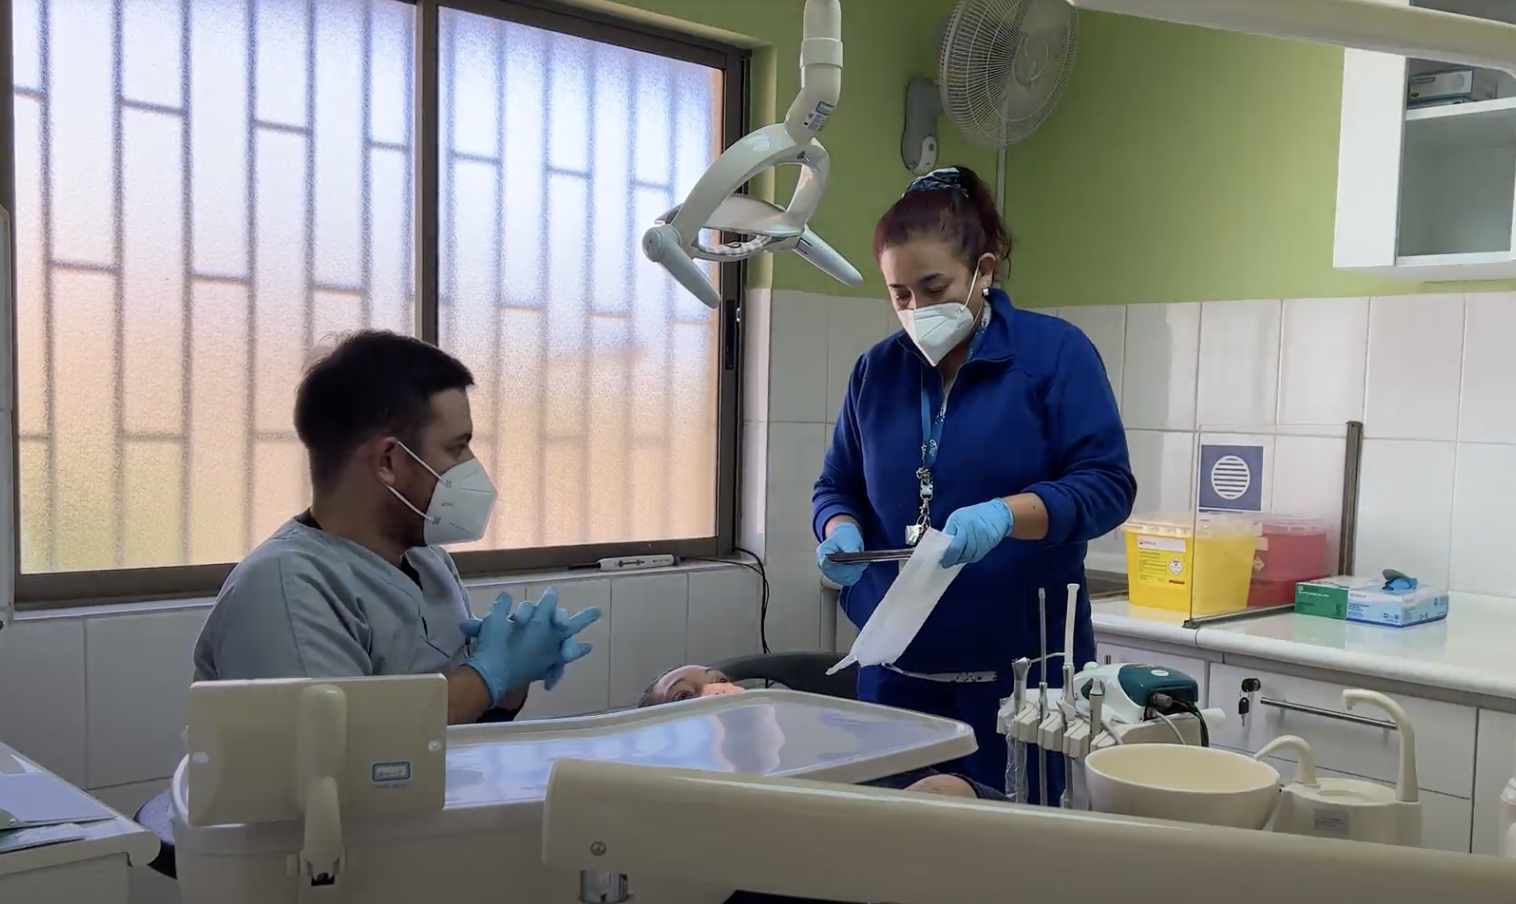 SAN ESTEBAN: Unidad Dental del Departamento de Salud de San Esteban realizará conversatorio abierto a vecinas y vecinos de la comuna